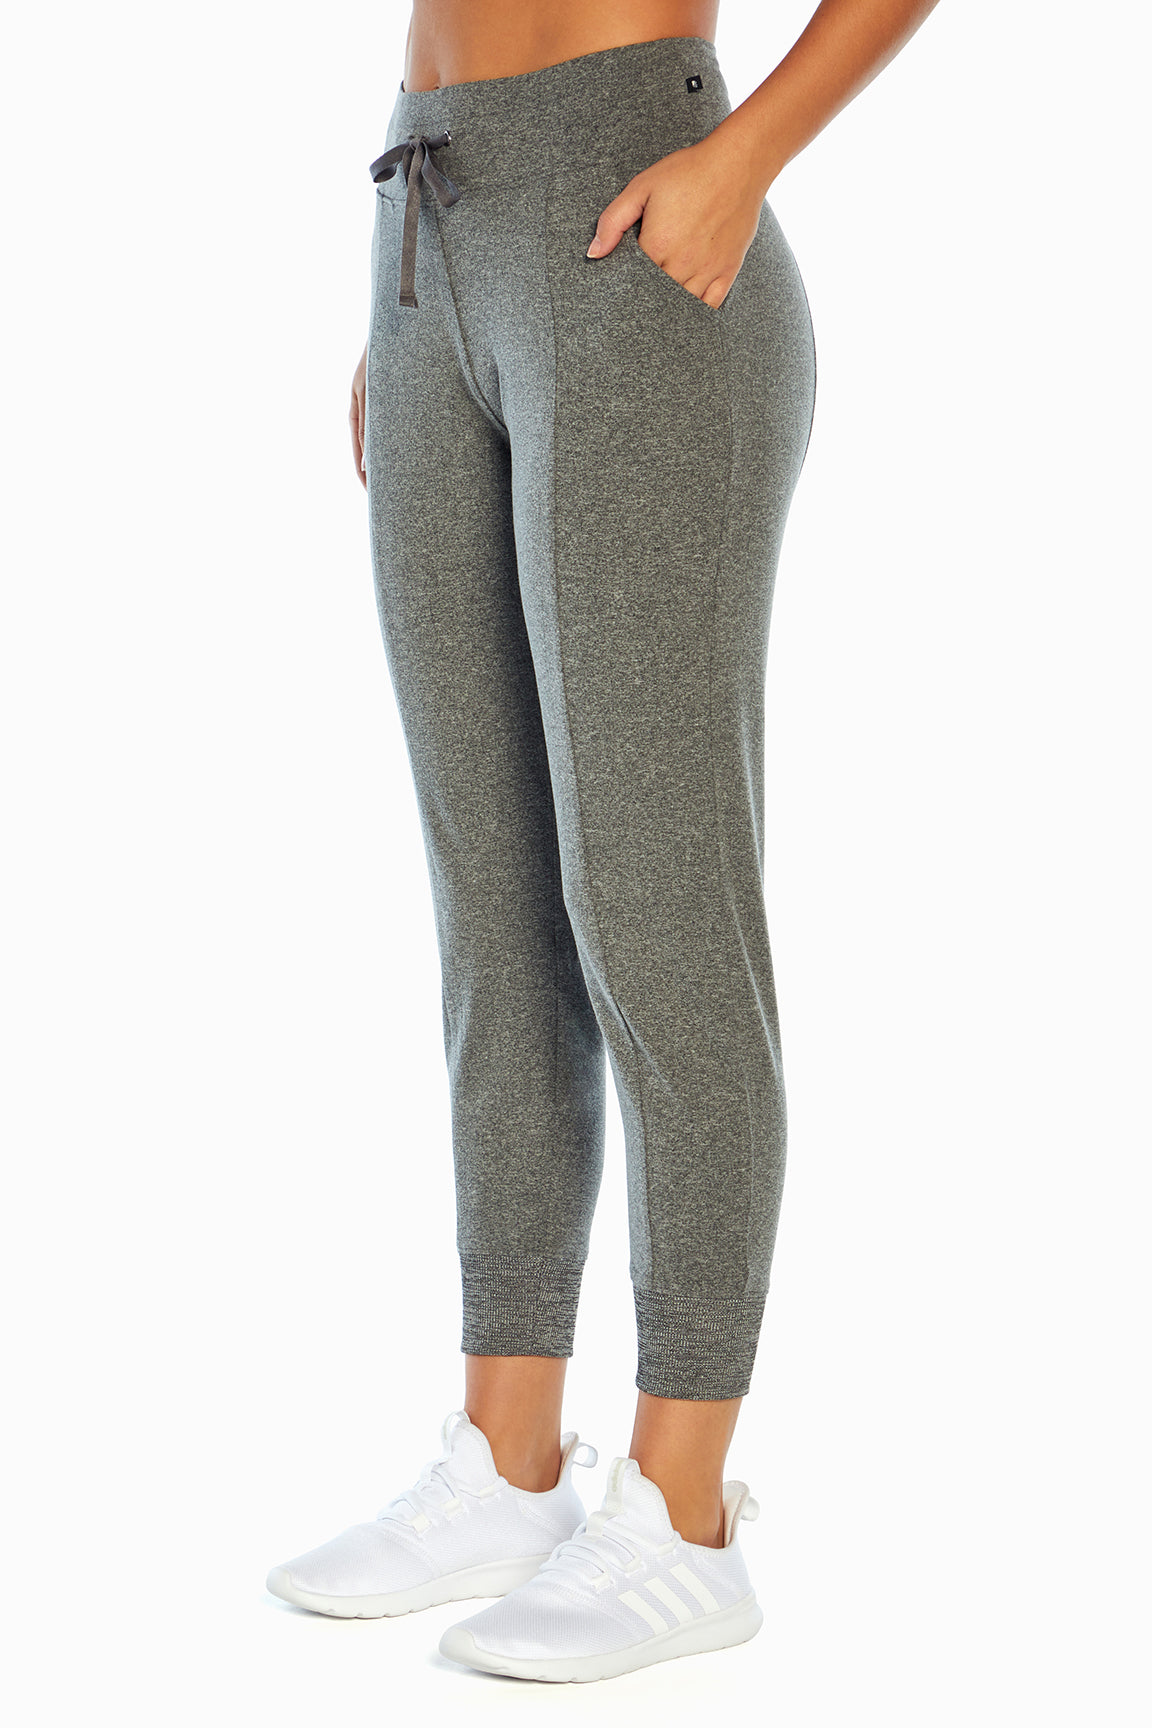 Marika Activewear Mona Capri Pants - Gray - Size Small - NEW